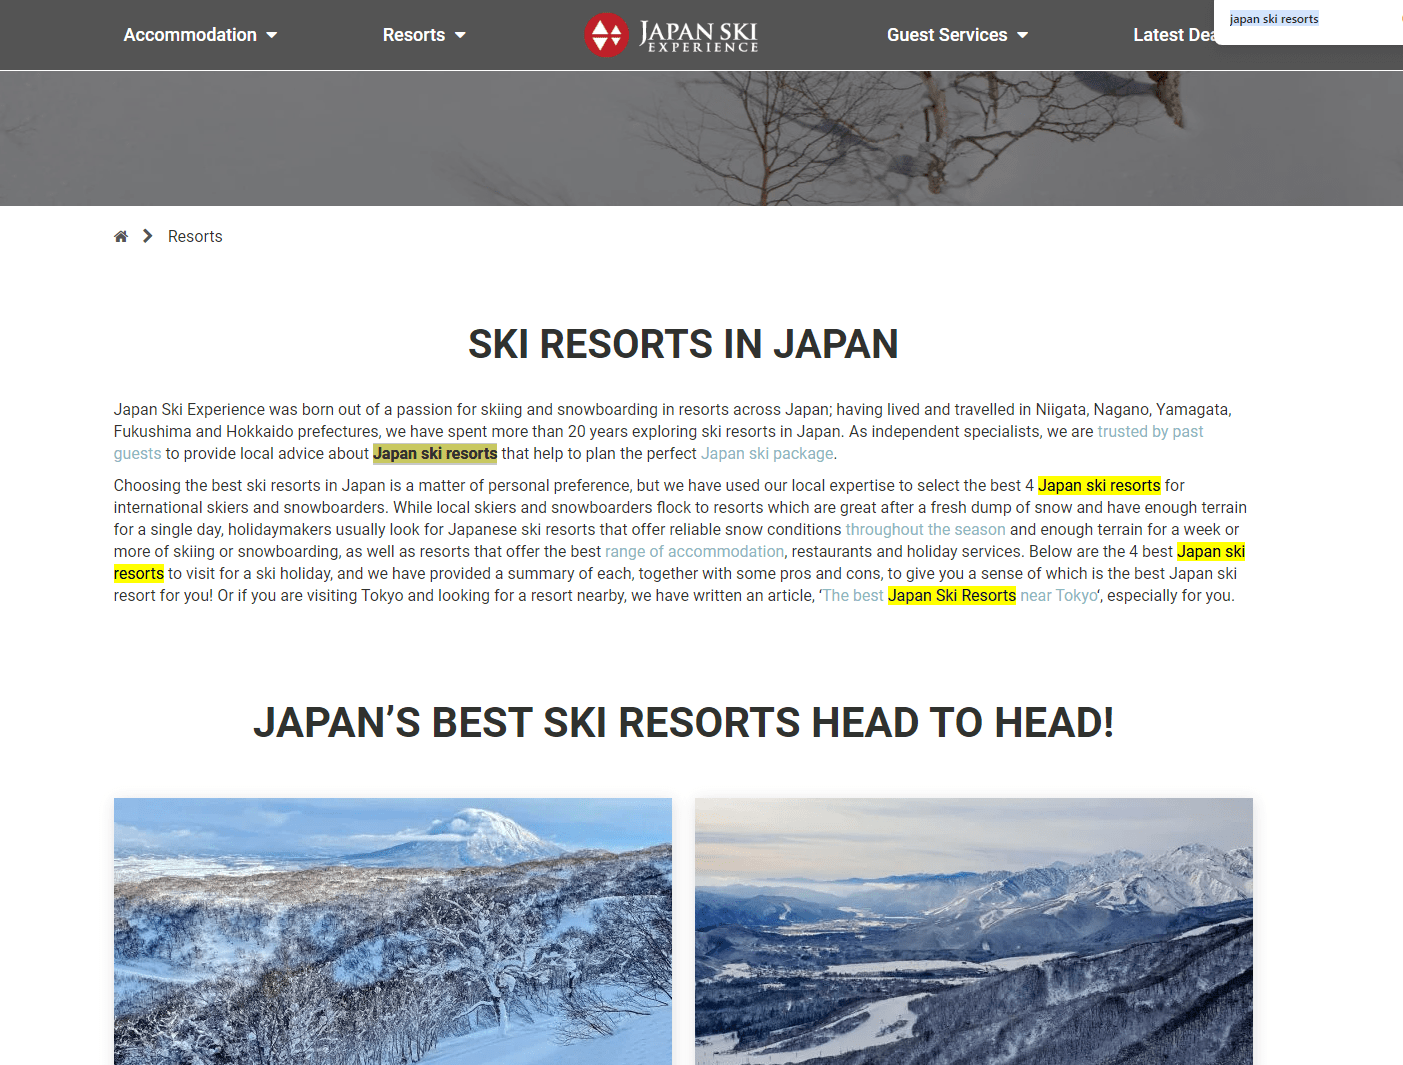 Japan ski resorts page